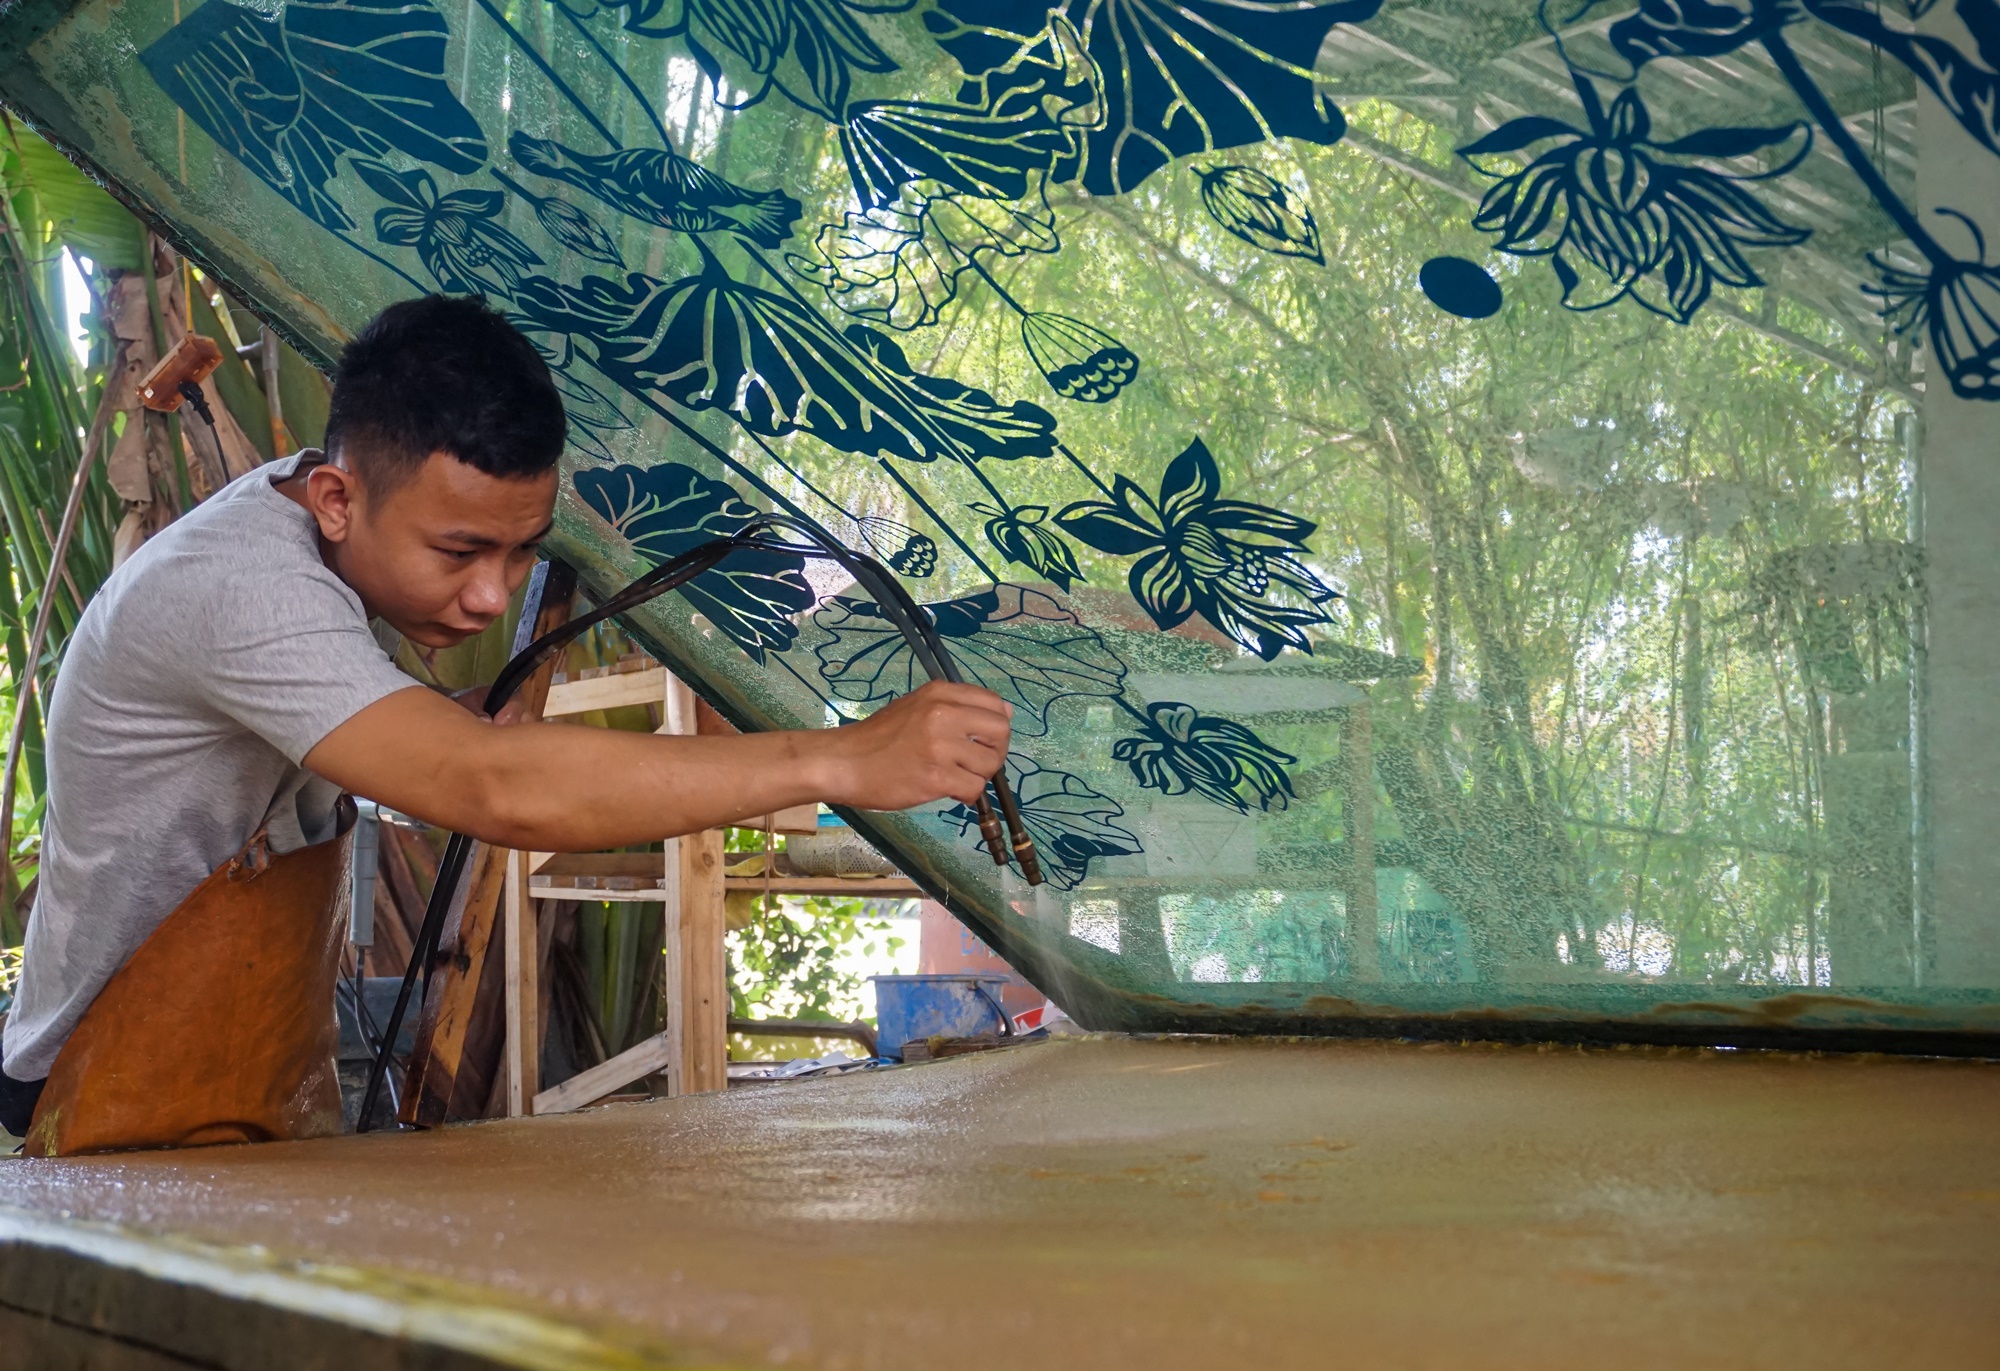 Dùng bẹ dừa làm giấy, xịt nước để vẽ tranh 'xuyên sáng' bán với giá hàng chục triệu đồng - Ảnh 10.